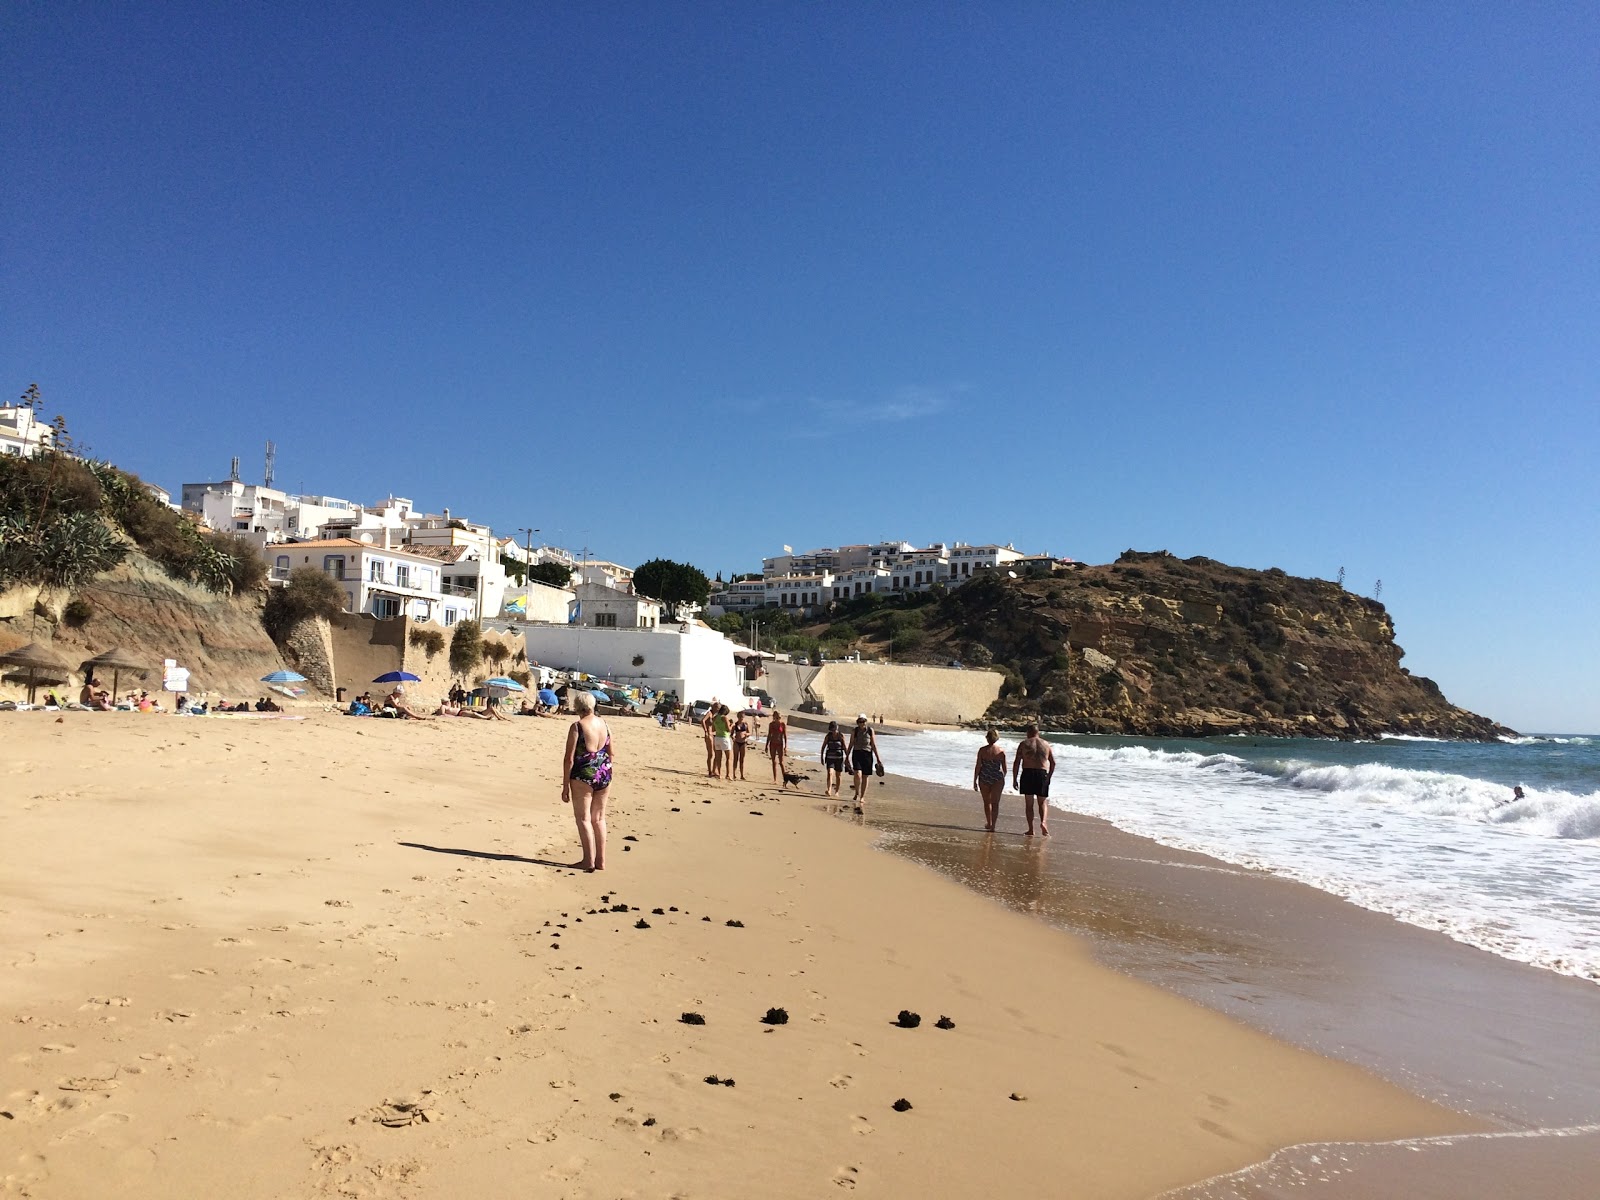 Fotografie cu Praia do Burgau - locul popular printre cunoscătorii de relaxare